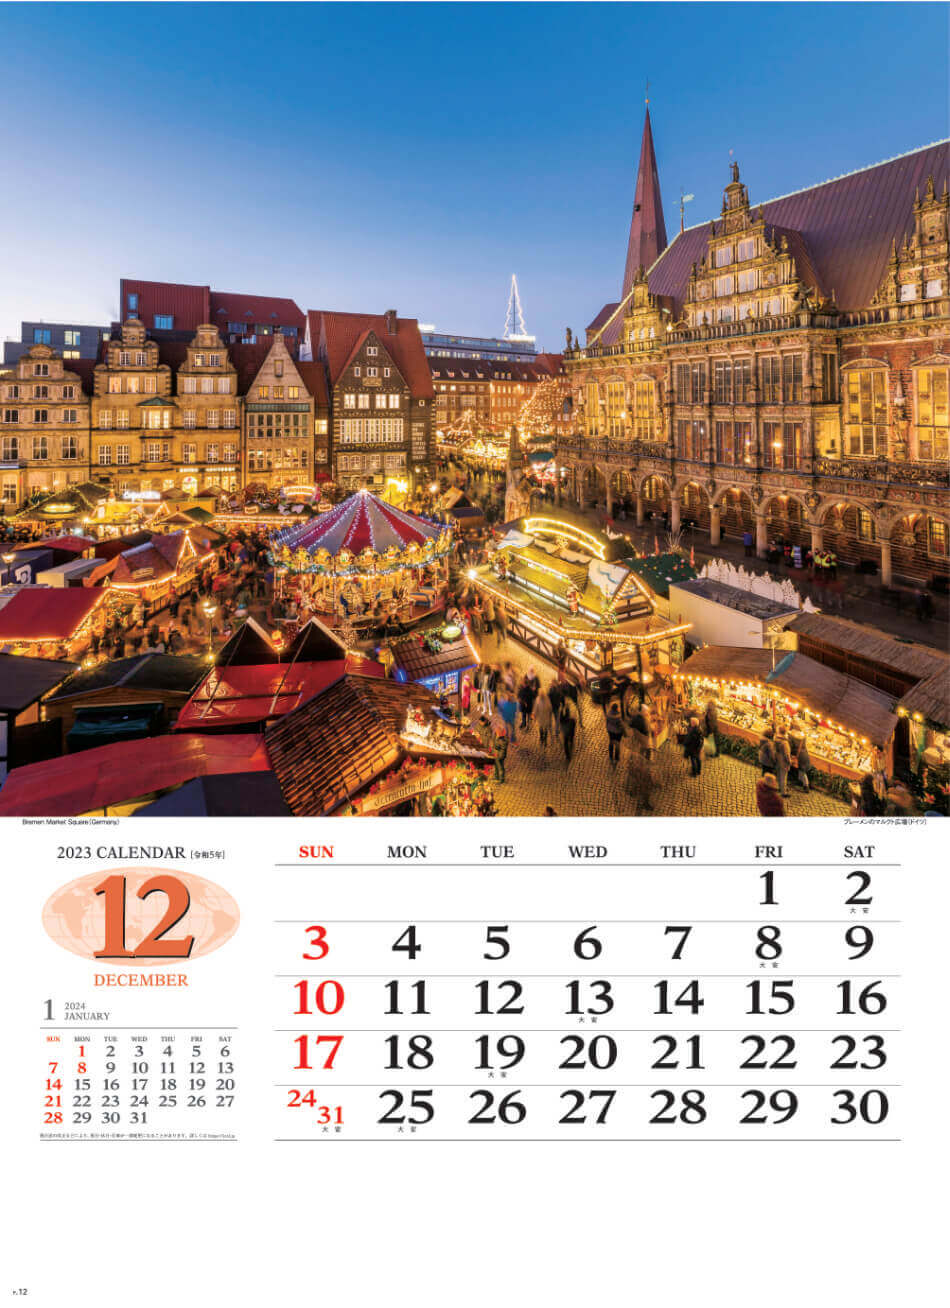 12月 ブレーメンのマルクト広場(ドイツ) 世界の景観 2023年カレンダーの画像